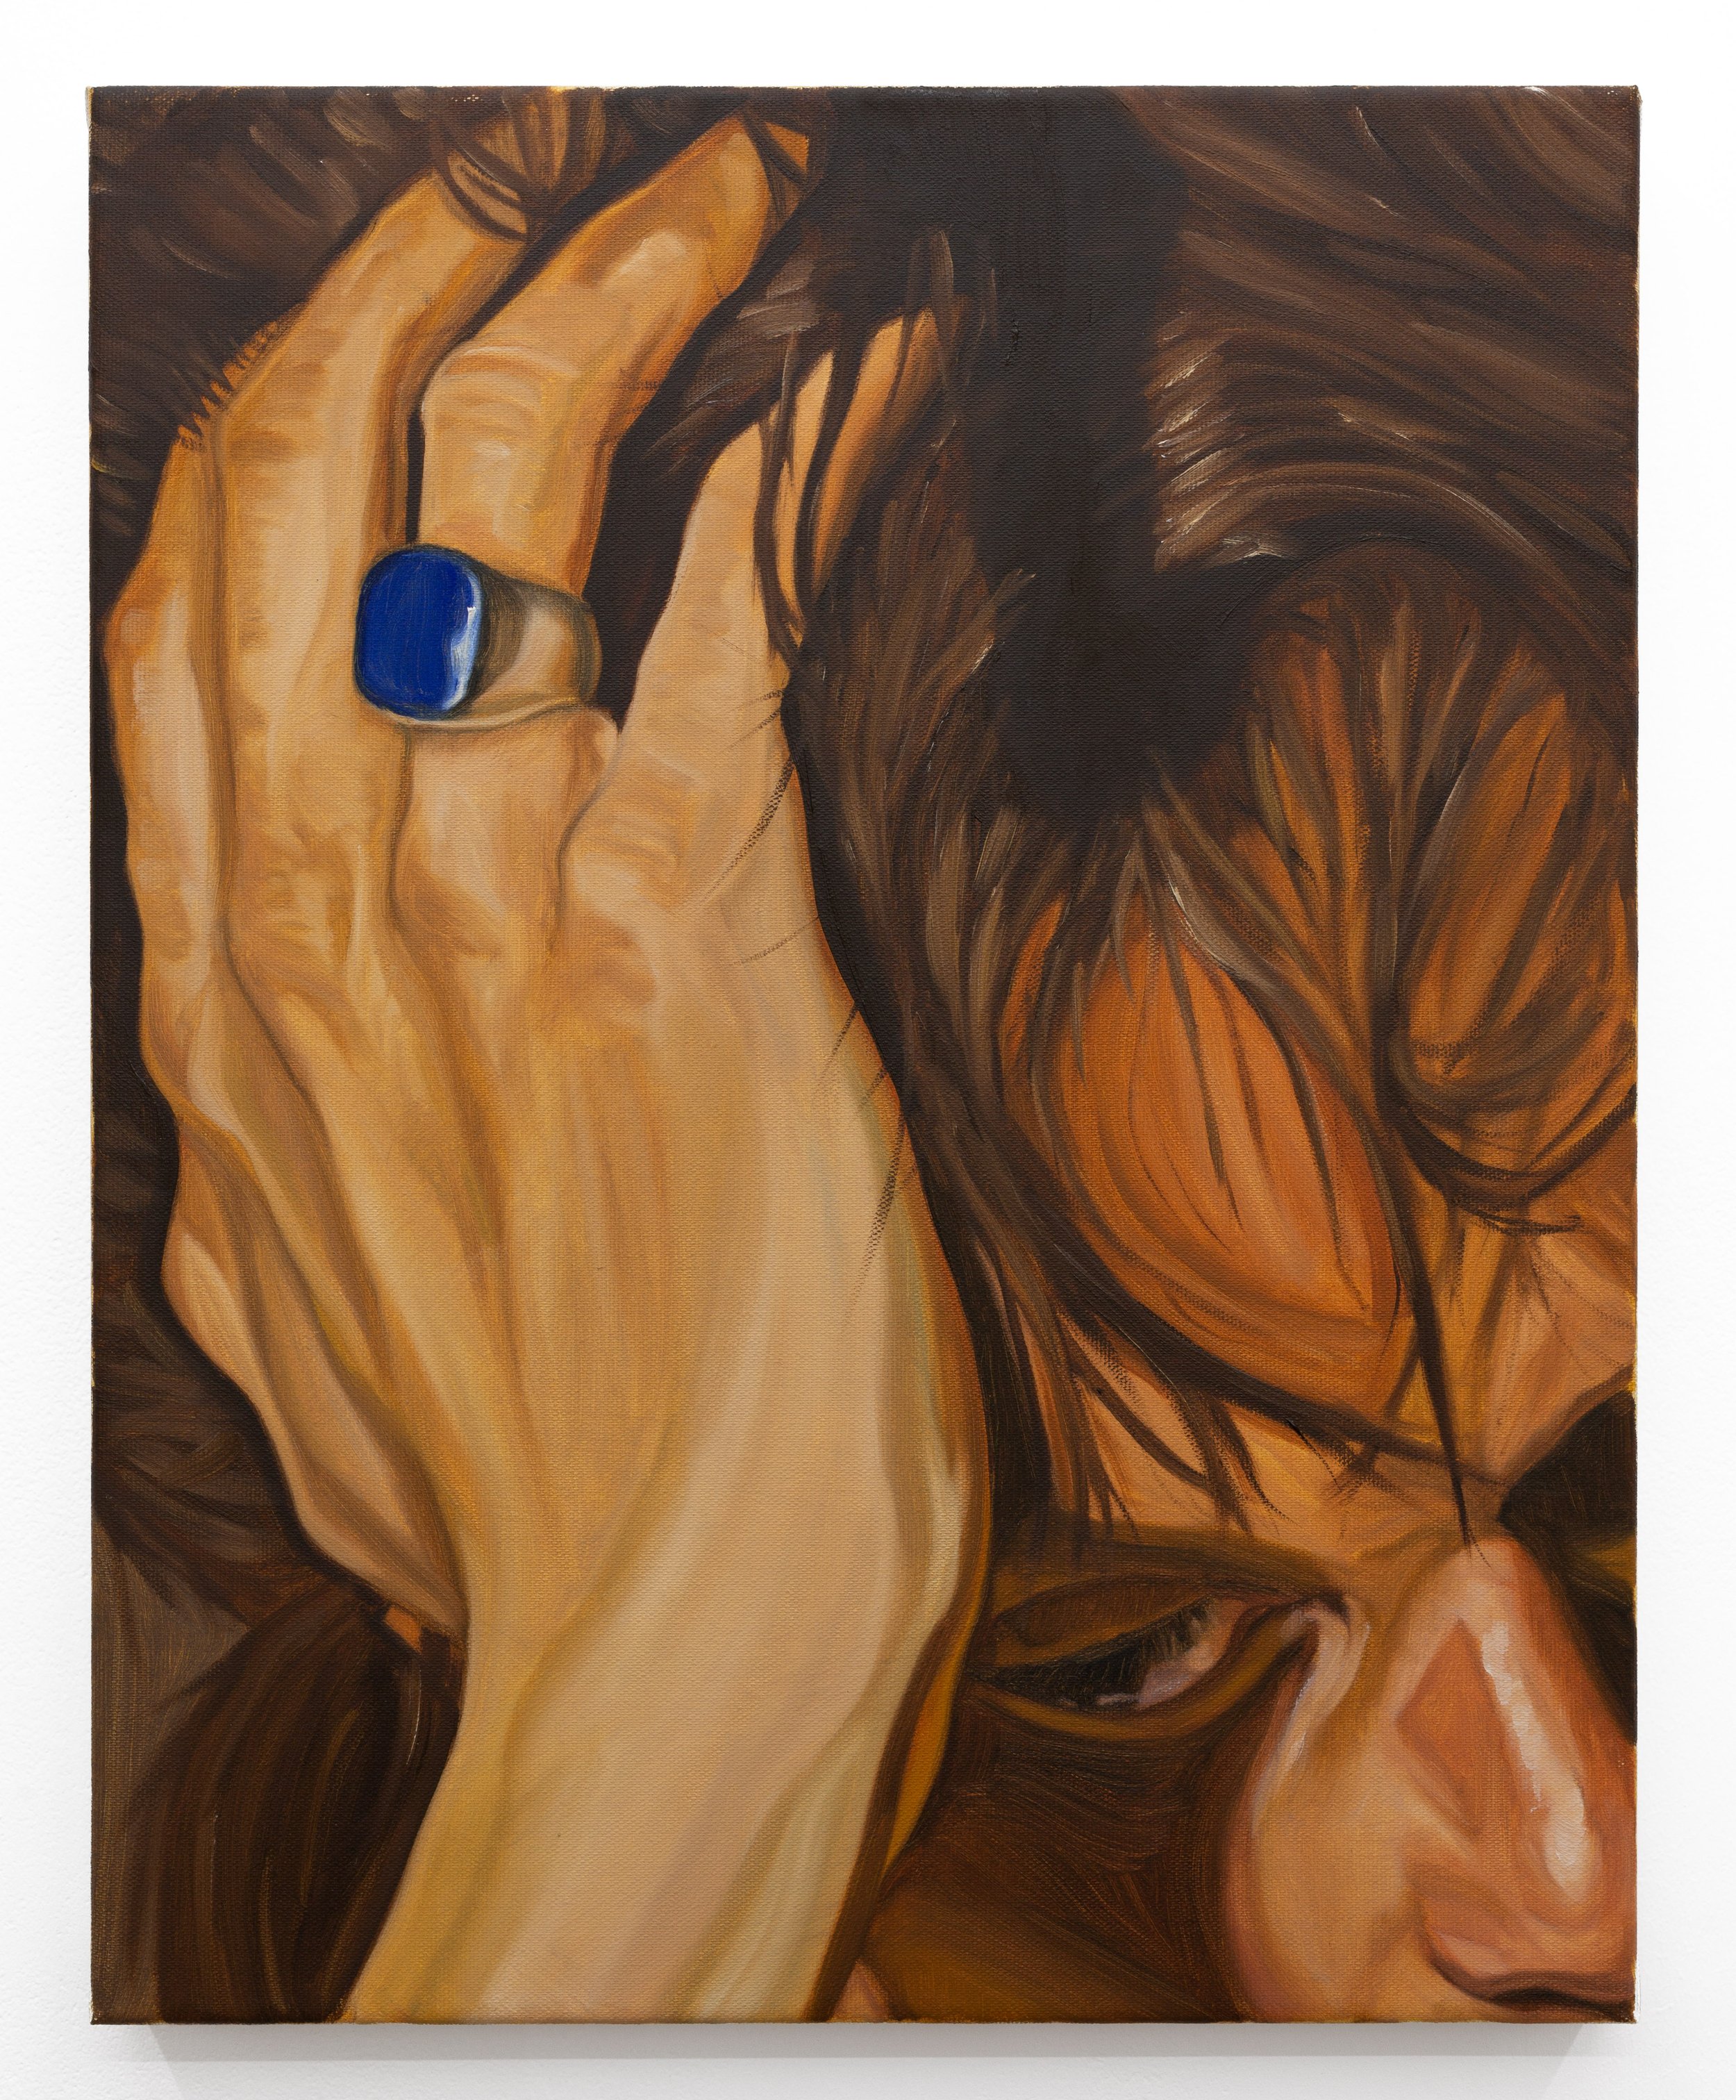   Lapis Lazuli   2021  Oil on canvas  50cm x 40cm  c/ Benjamin Deakin 